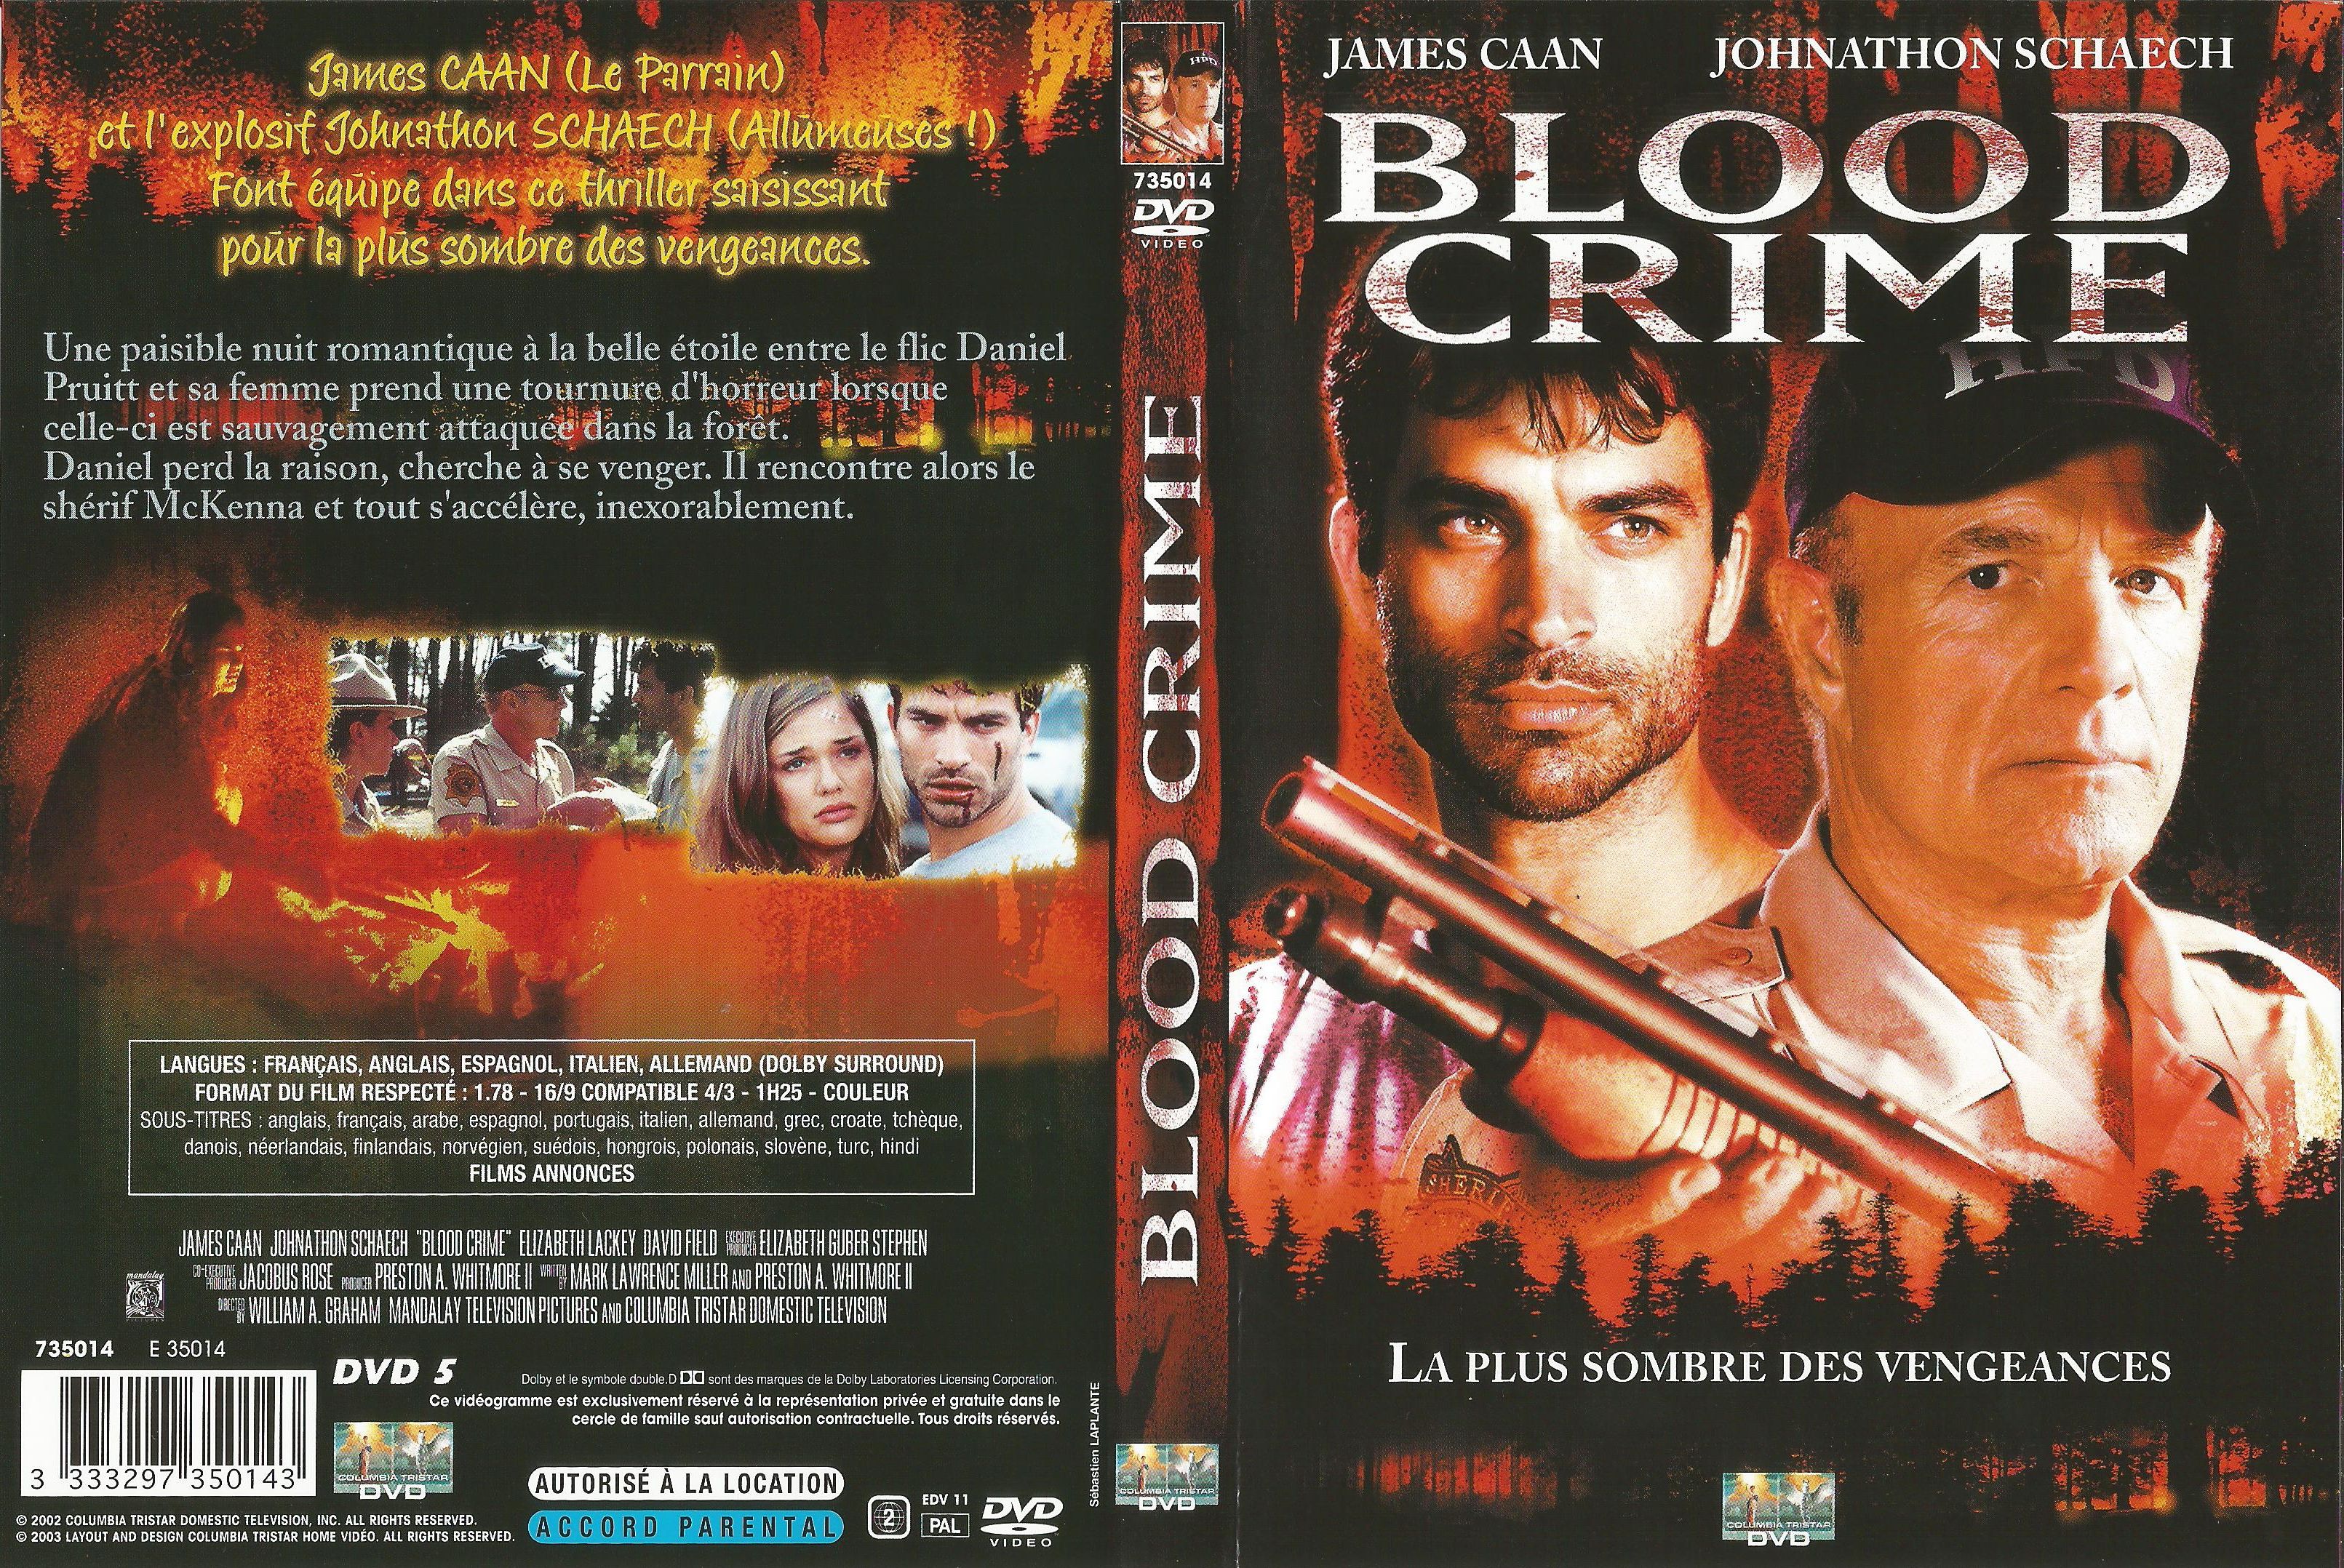 Jaquette DVD Blood crime v2